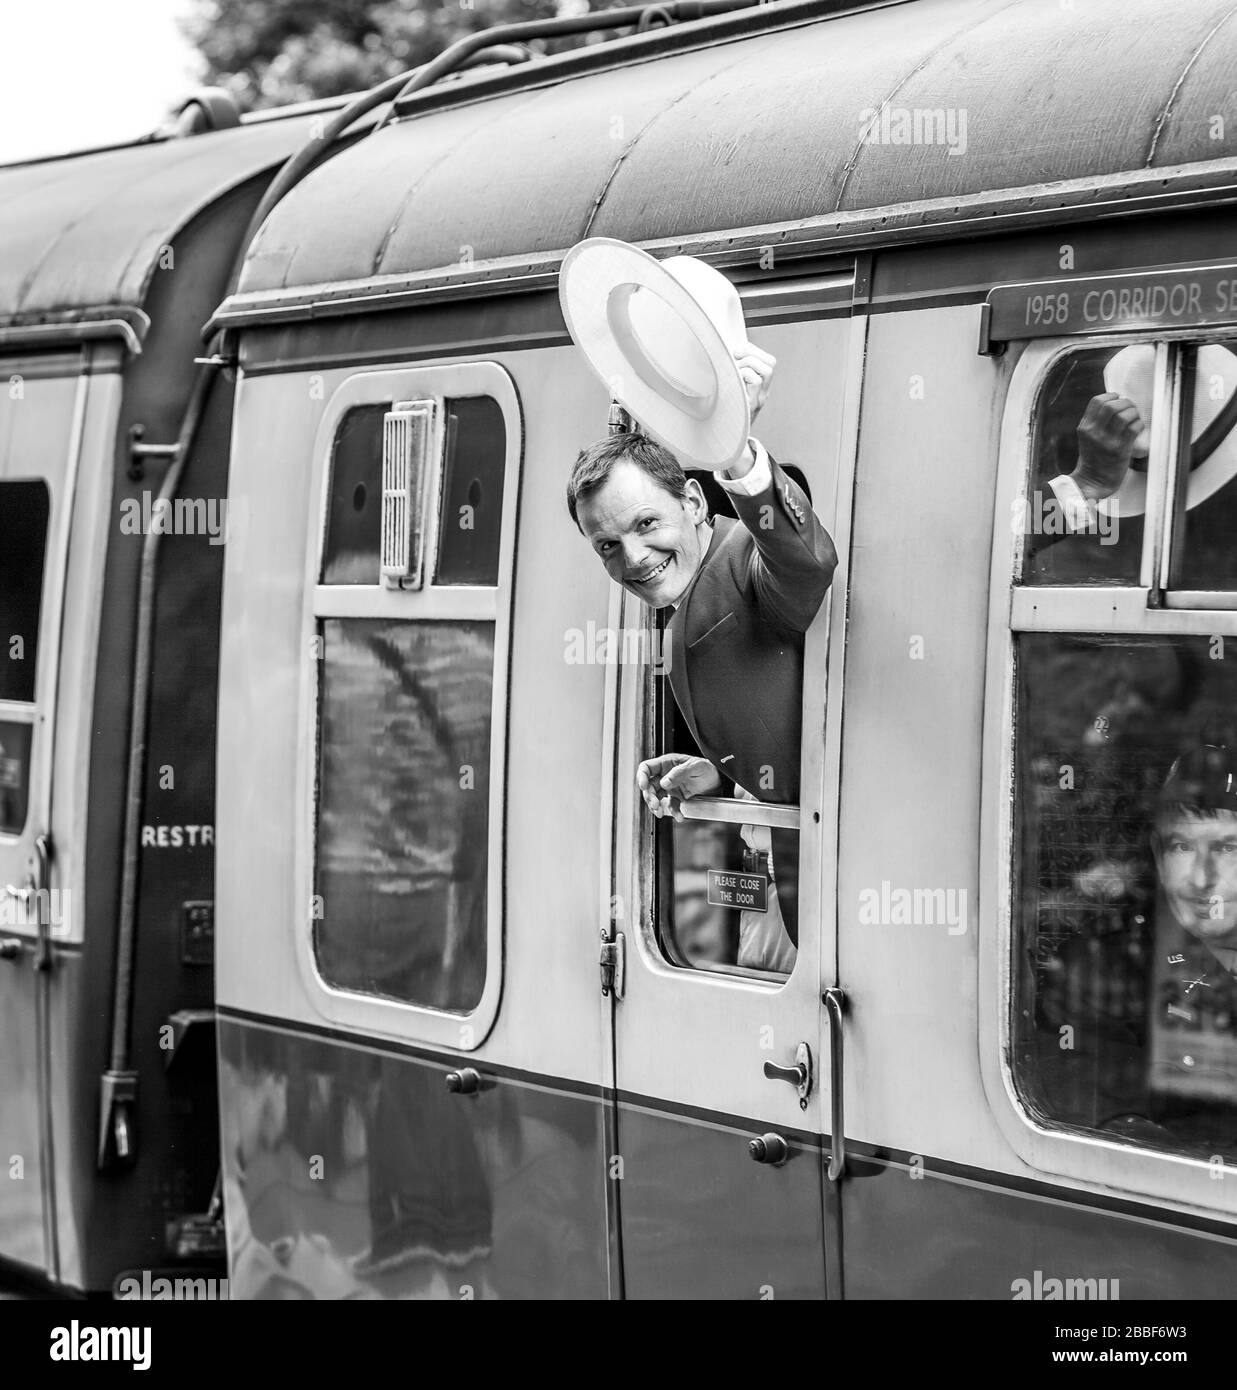 Blanco y negro, hombre sonriente de los años 40 a bordo del tren de vapor del Reino Unido que se inclina fuera de la ventana del vagón de ferrocarril vintage que agitaba Adiós con sombrero, tren del valle de Severn. Foto de stock